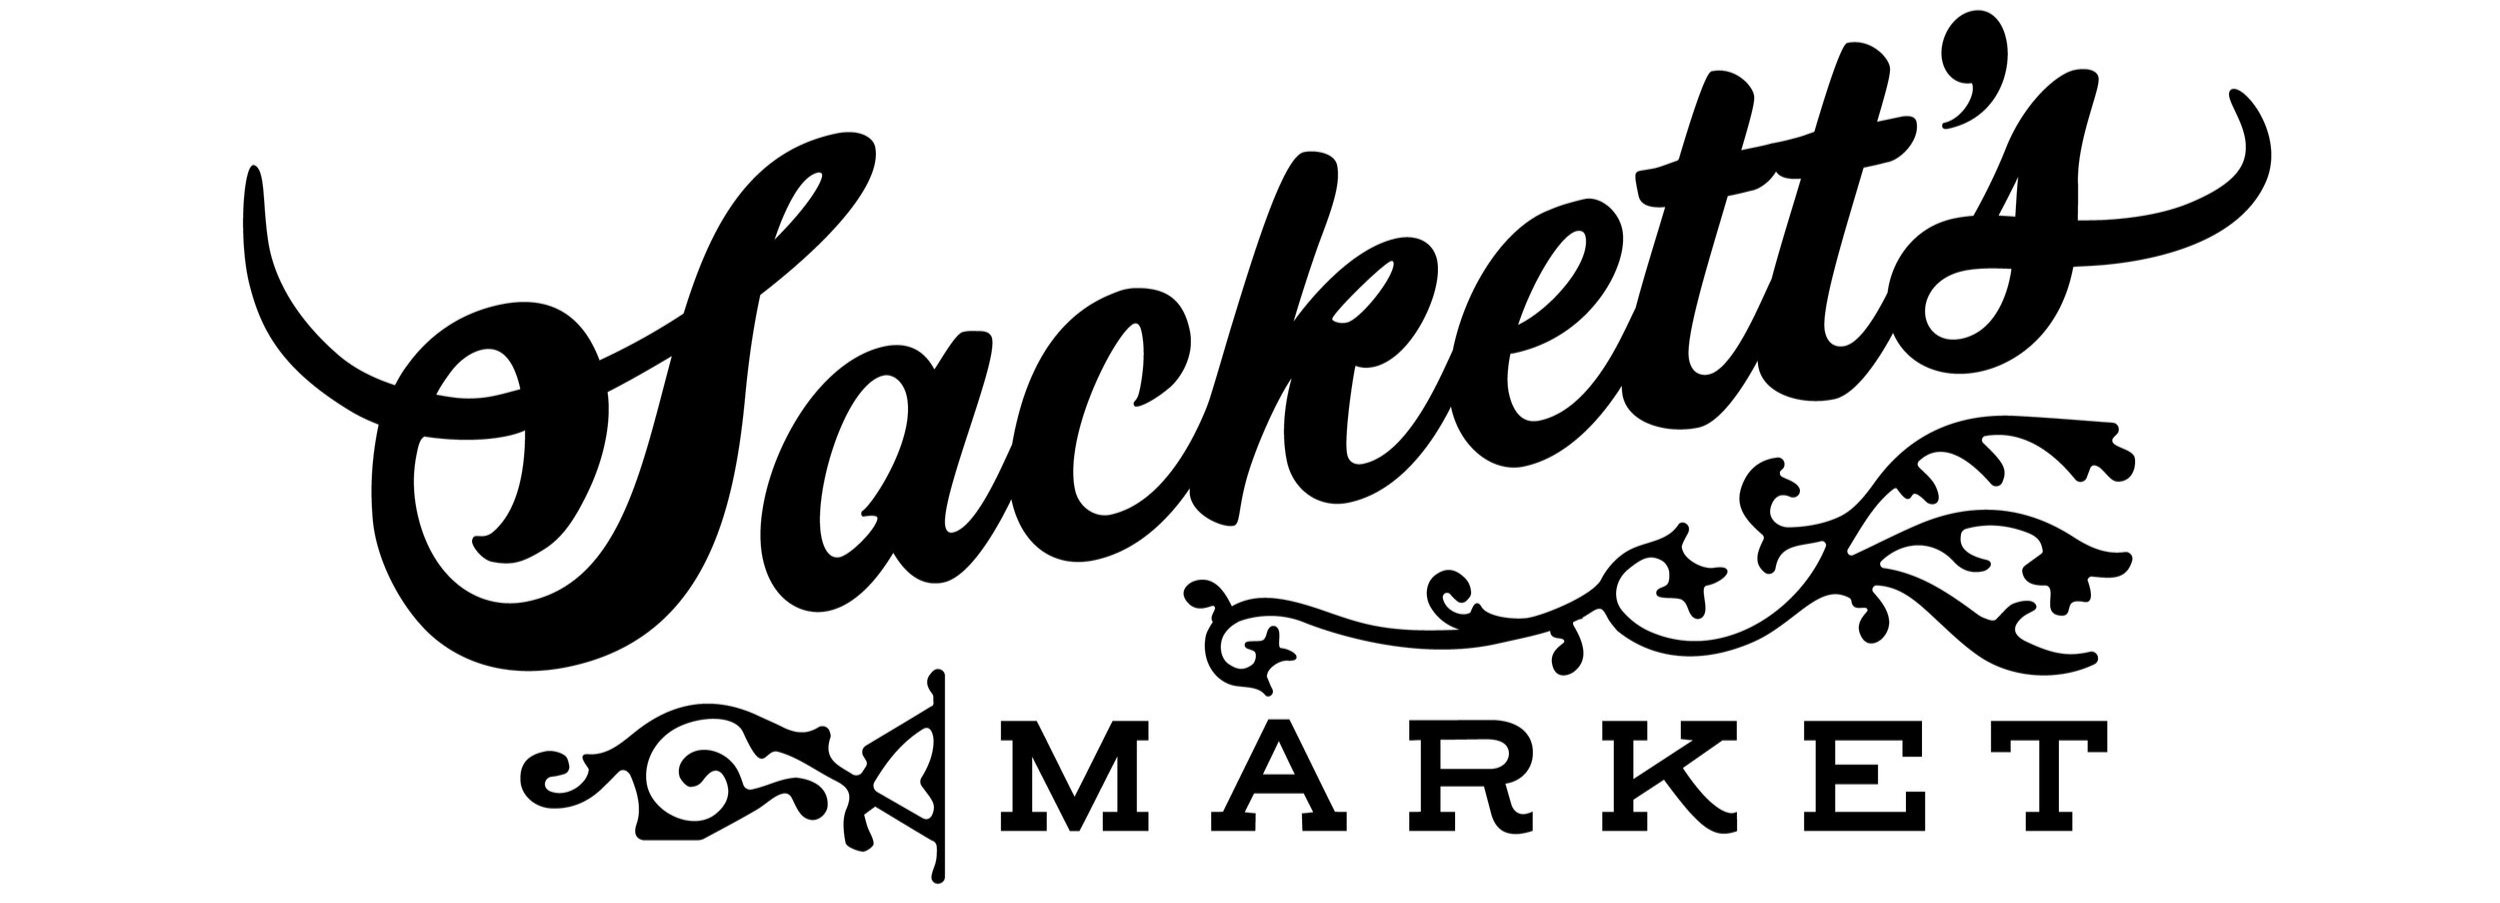 SackettsMarket_Typeset_OneColor_Black.jpg